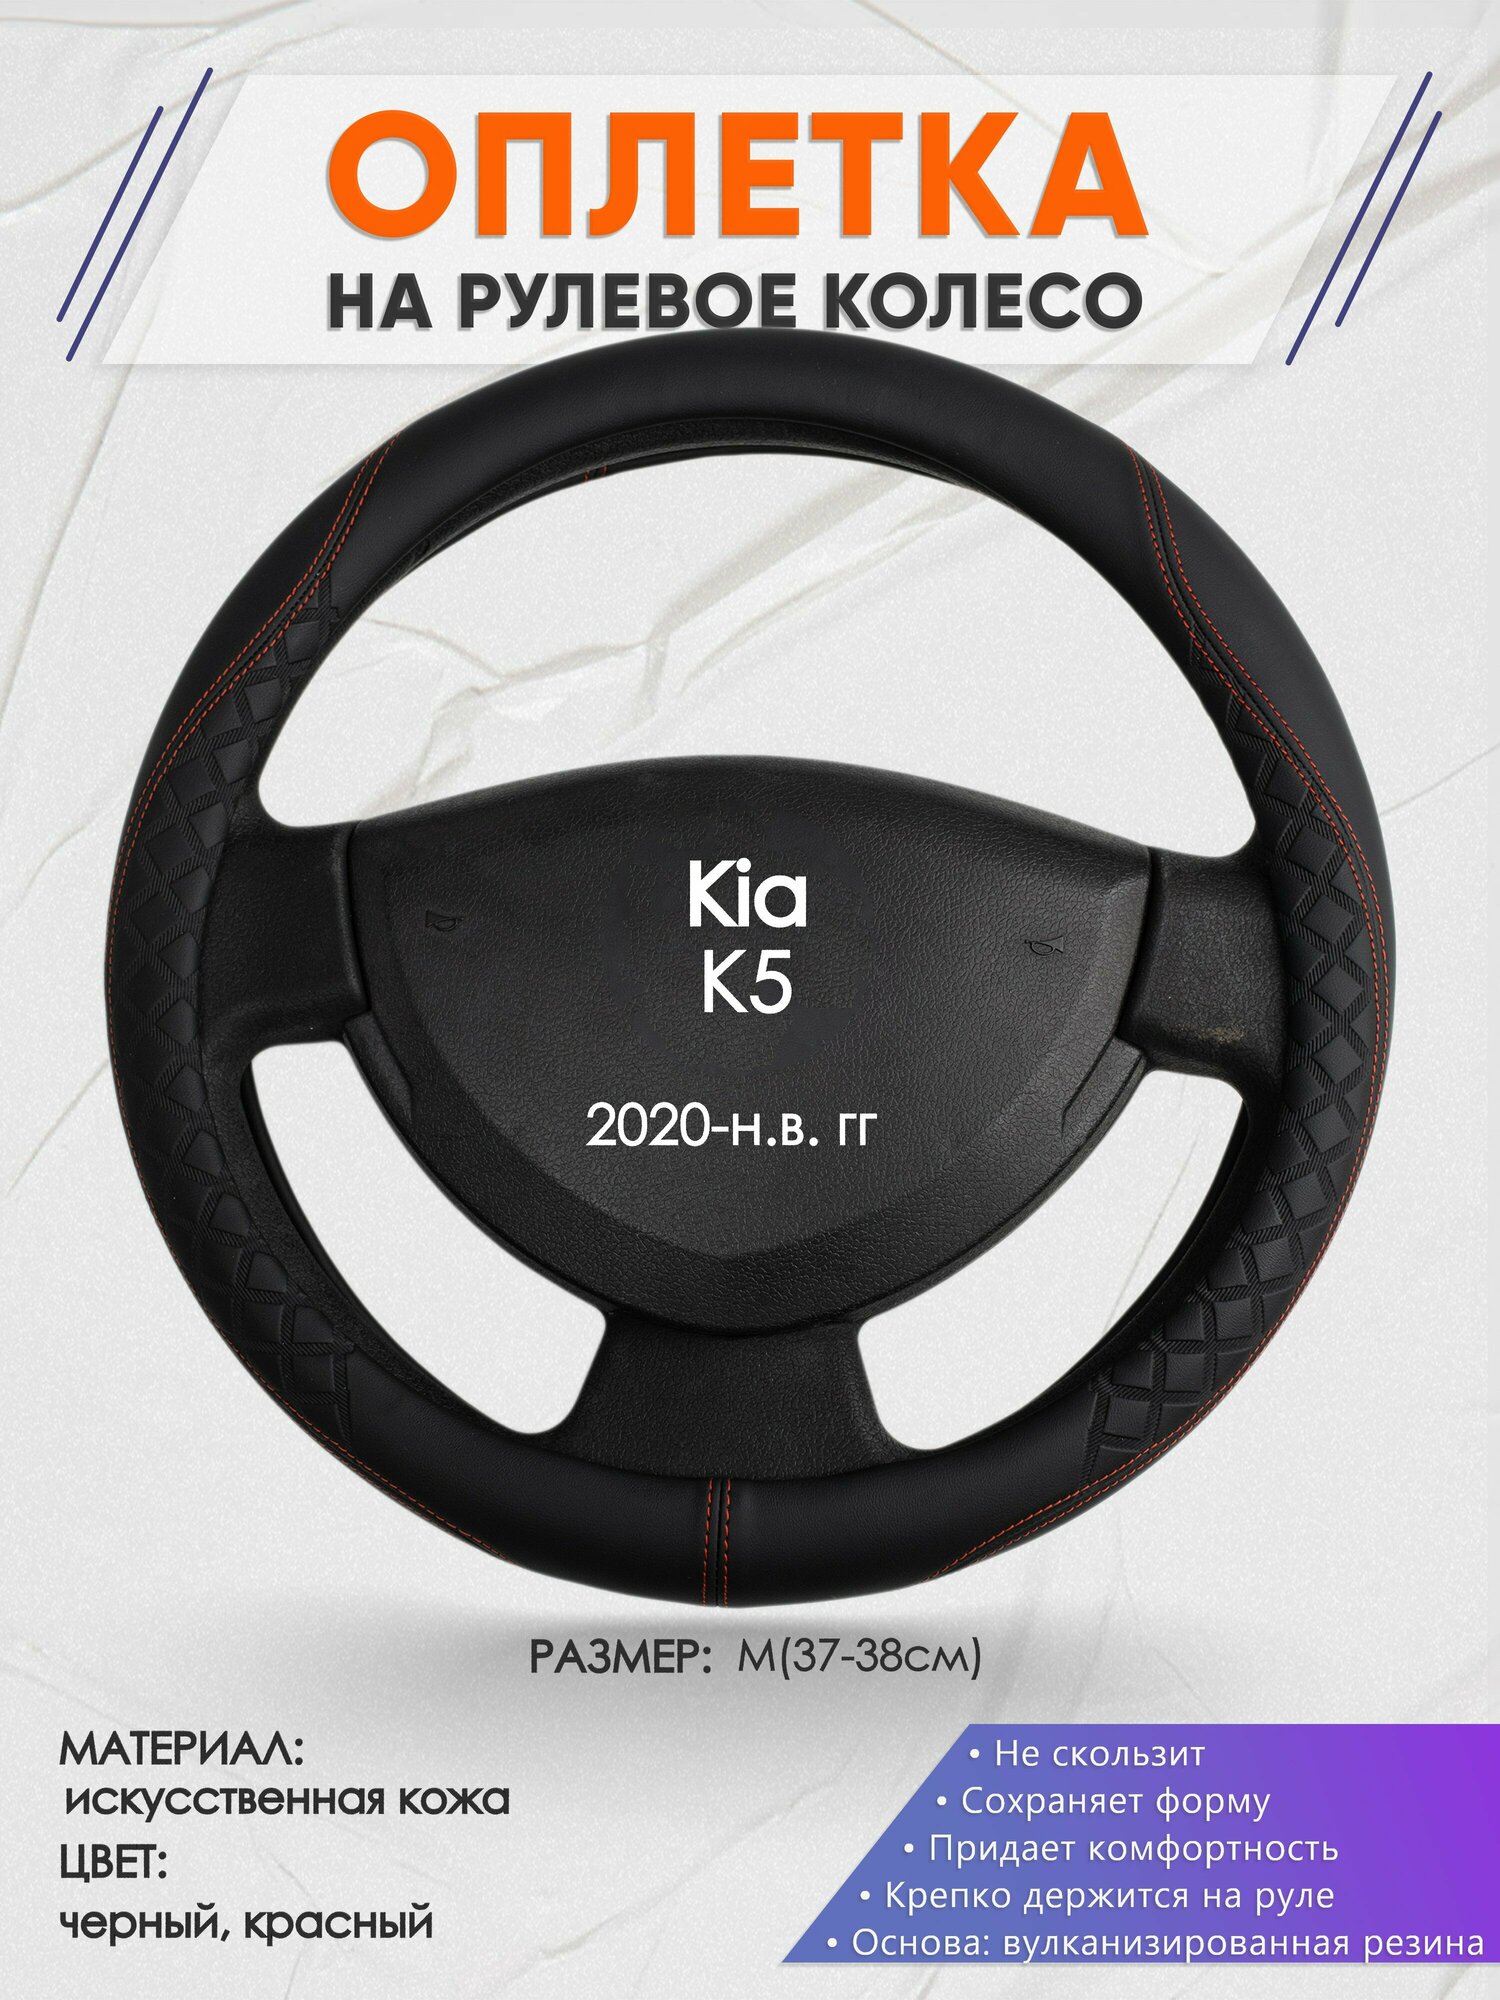 Оплетка на руль для Kia K5 (Киа К5) 2020-н. в M(37-38см) Искусственная кожа 68